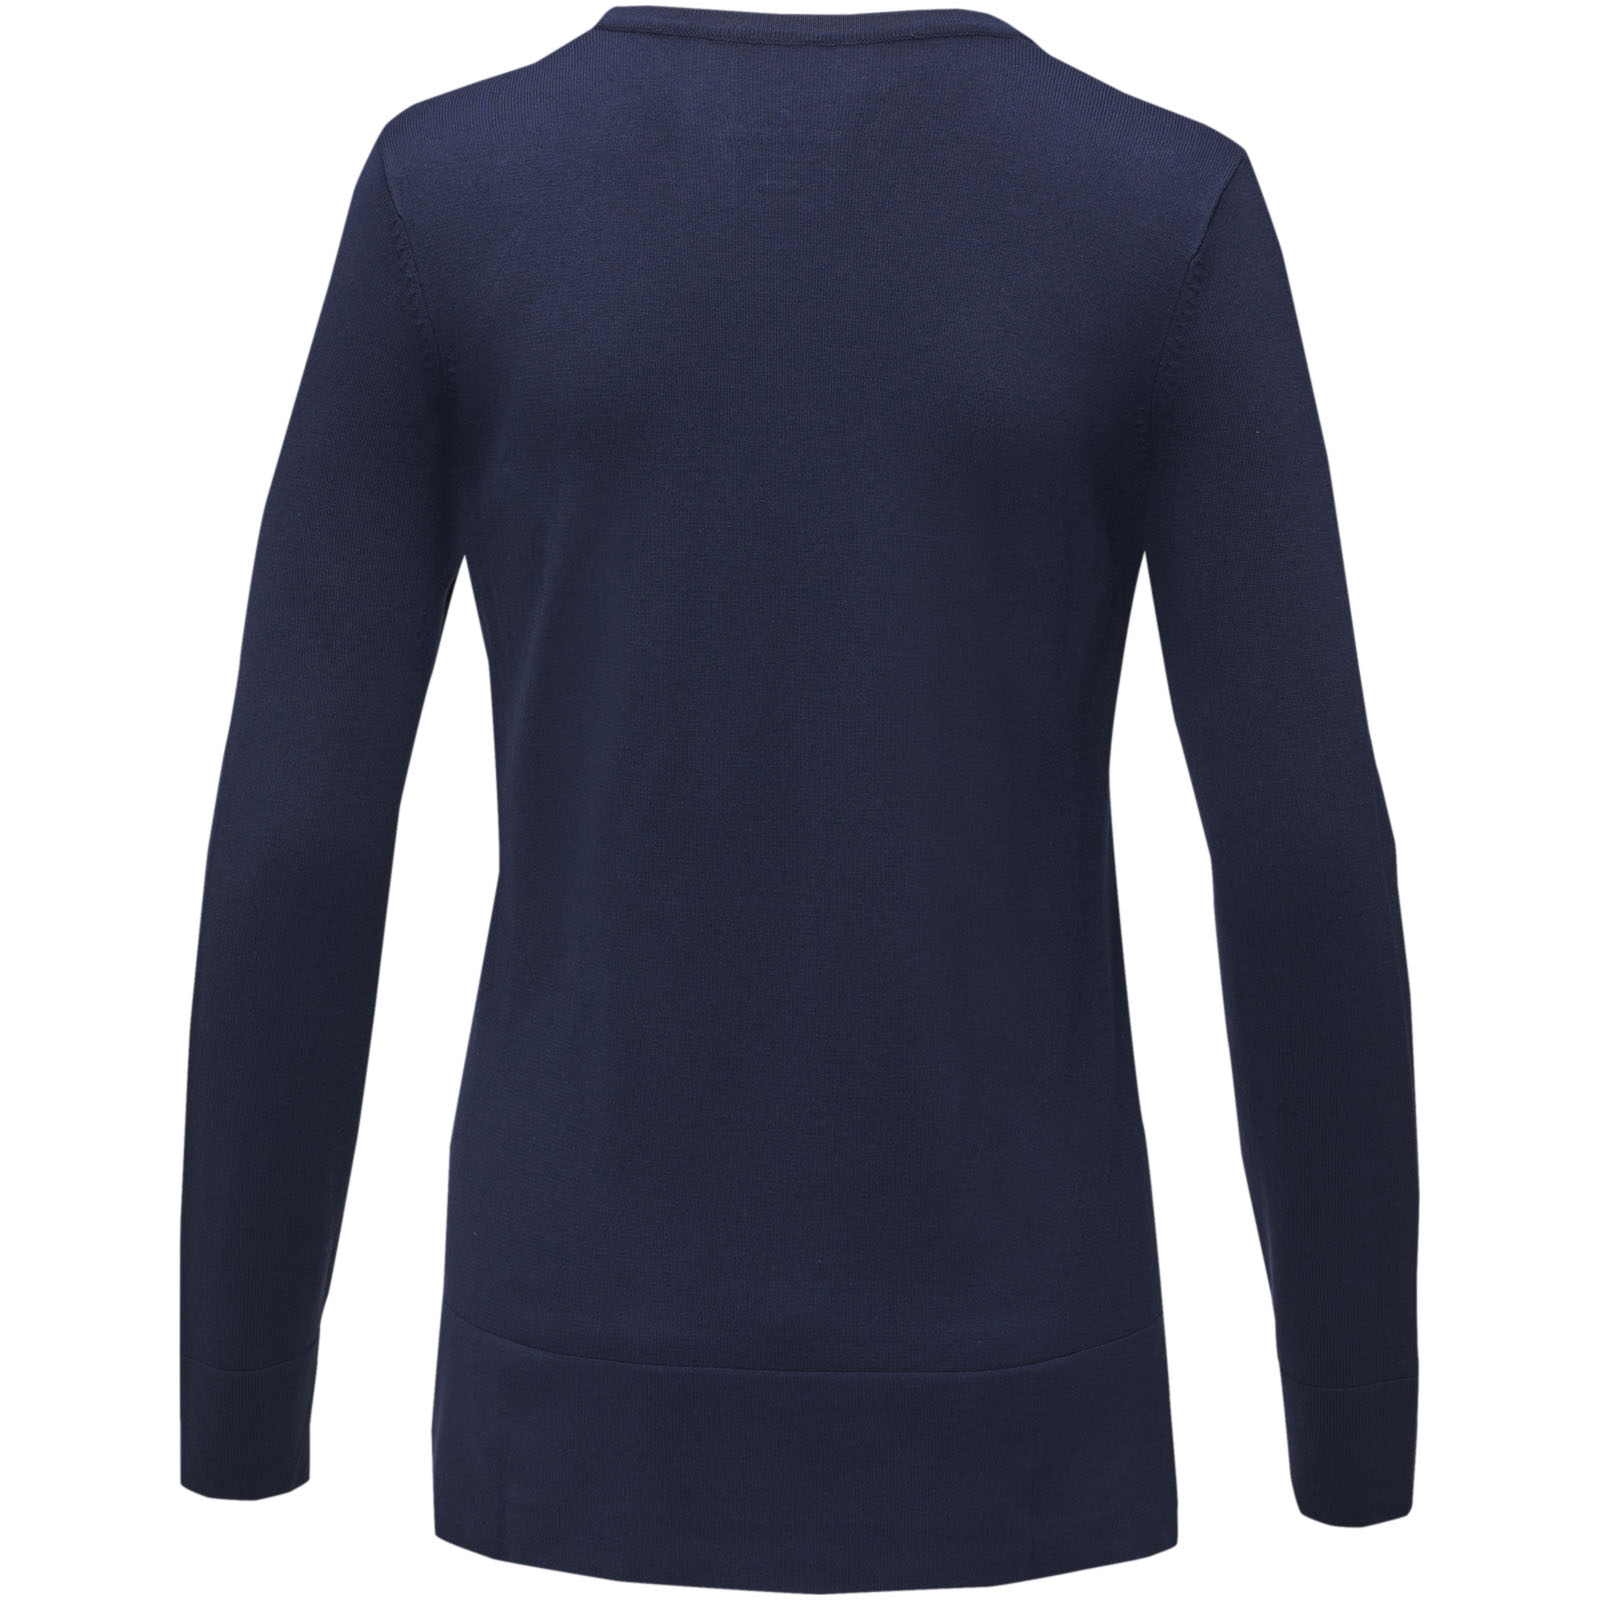 Advertising Pullovers - Stanton women's v-neck pullover - 2